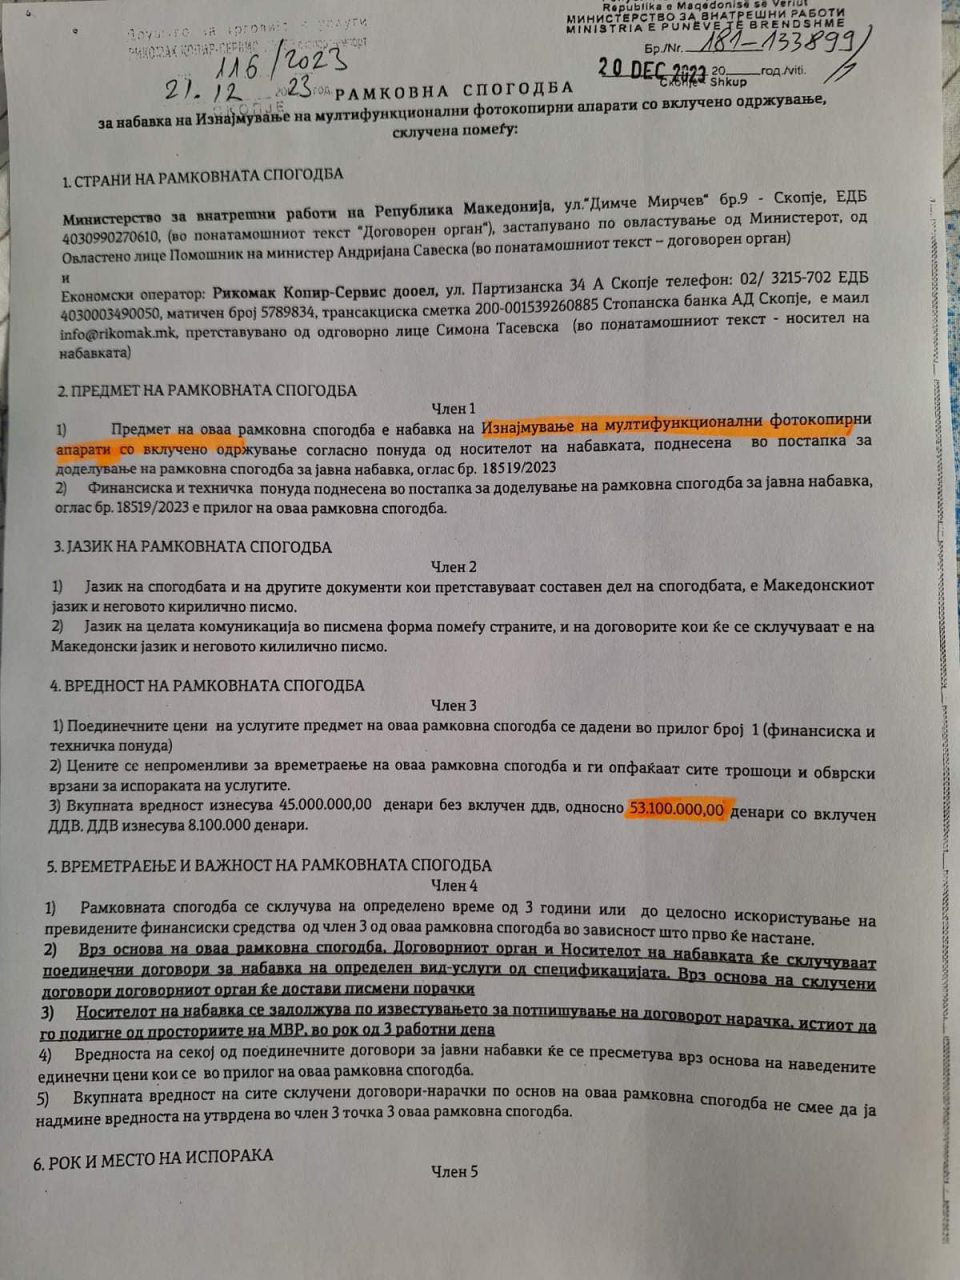 Спасовски пред избори потпиша договор за изнајмување принтери тежок 900.000 евра